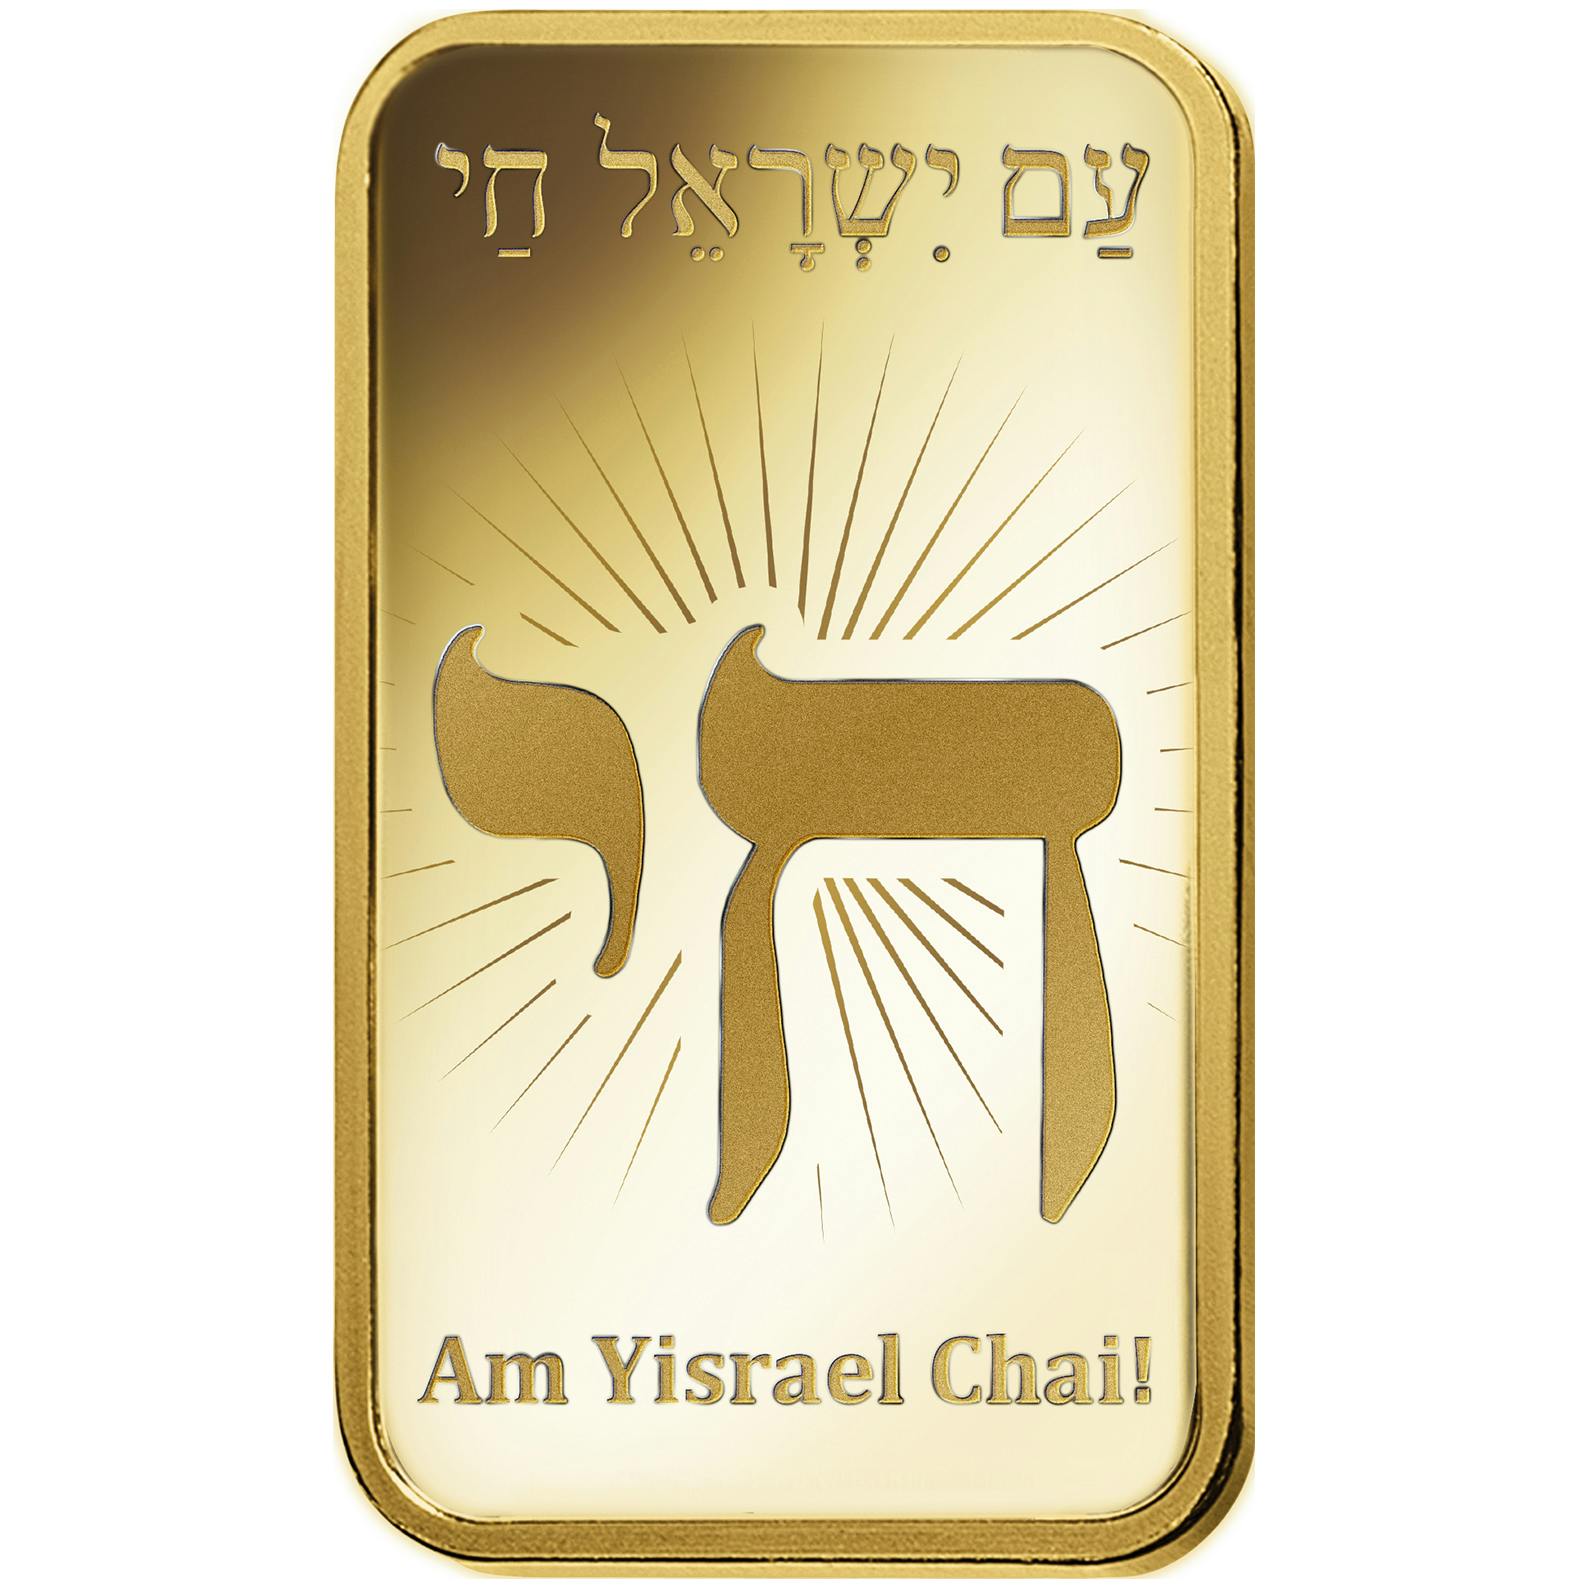 Compare oro, 5 grammi d'oro puro Am Yisrael Chai - PAMP Svizzera - Front